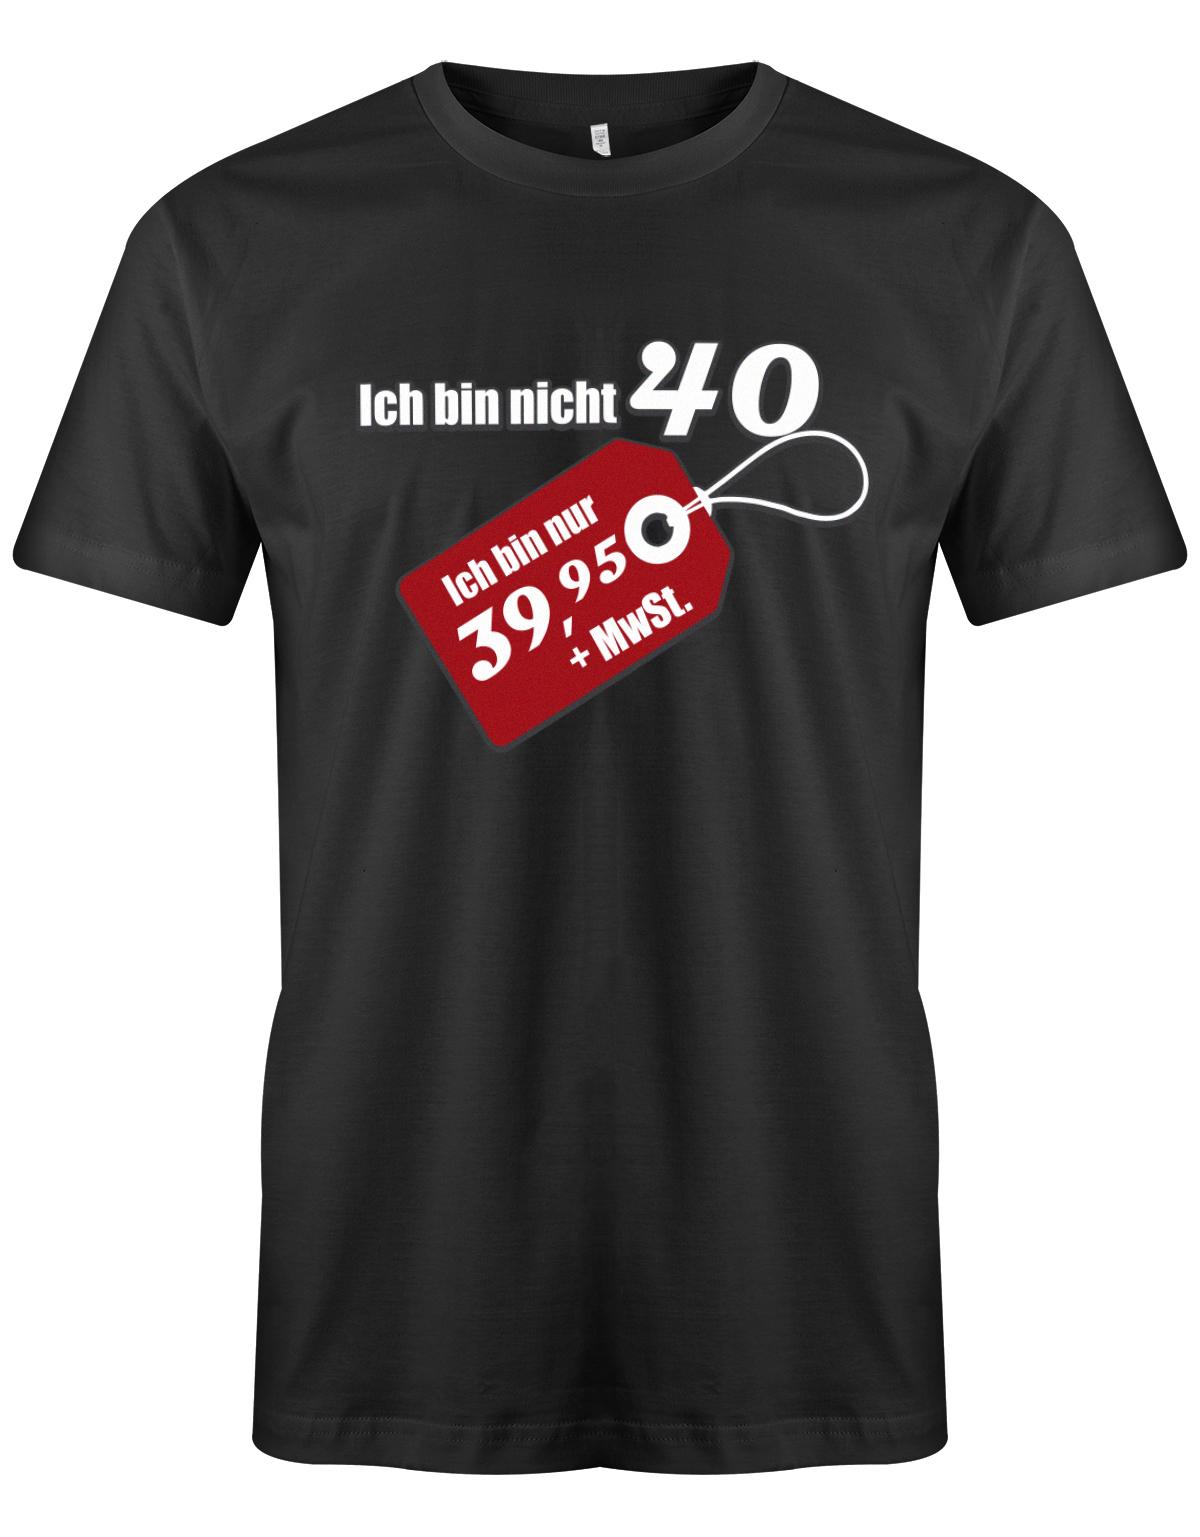 Ich bin nicht 40 ich bin 39,95 plus MwSt - T-Shirt 40 Geburtstag Männer - 1983 Schwarz